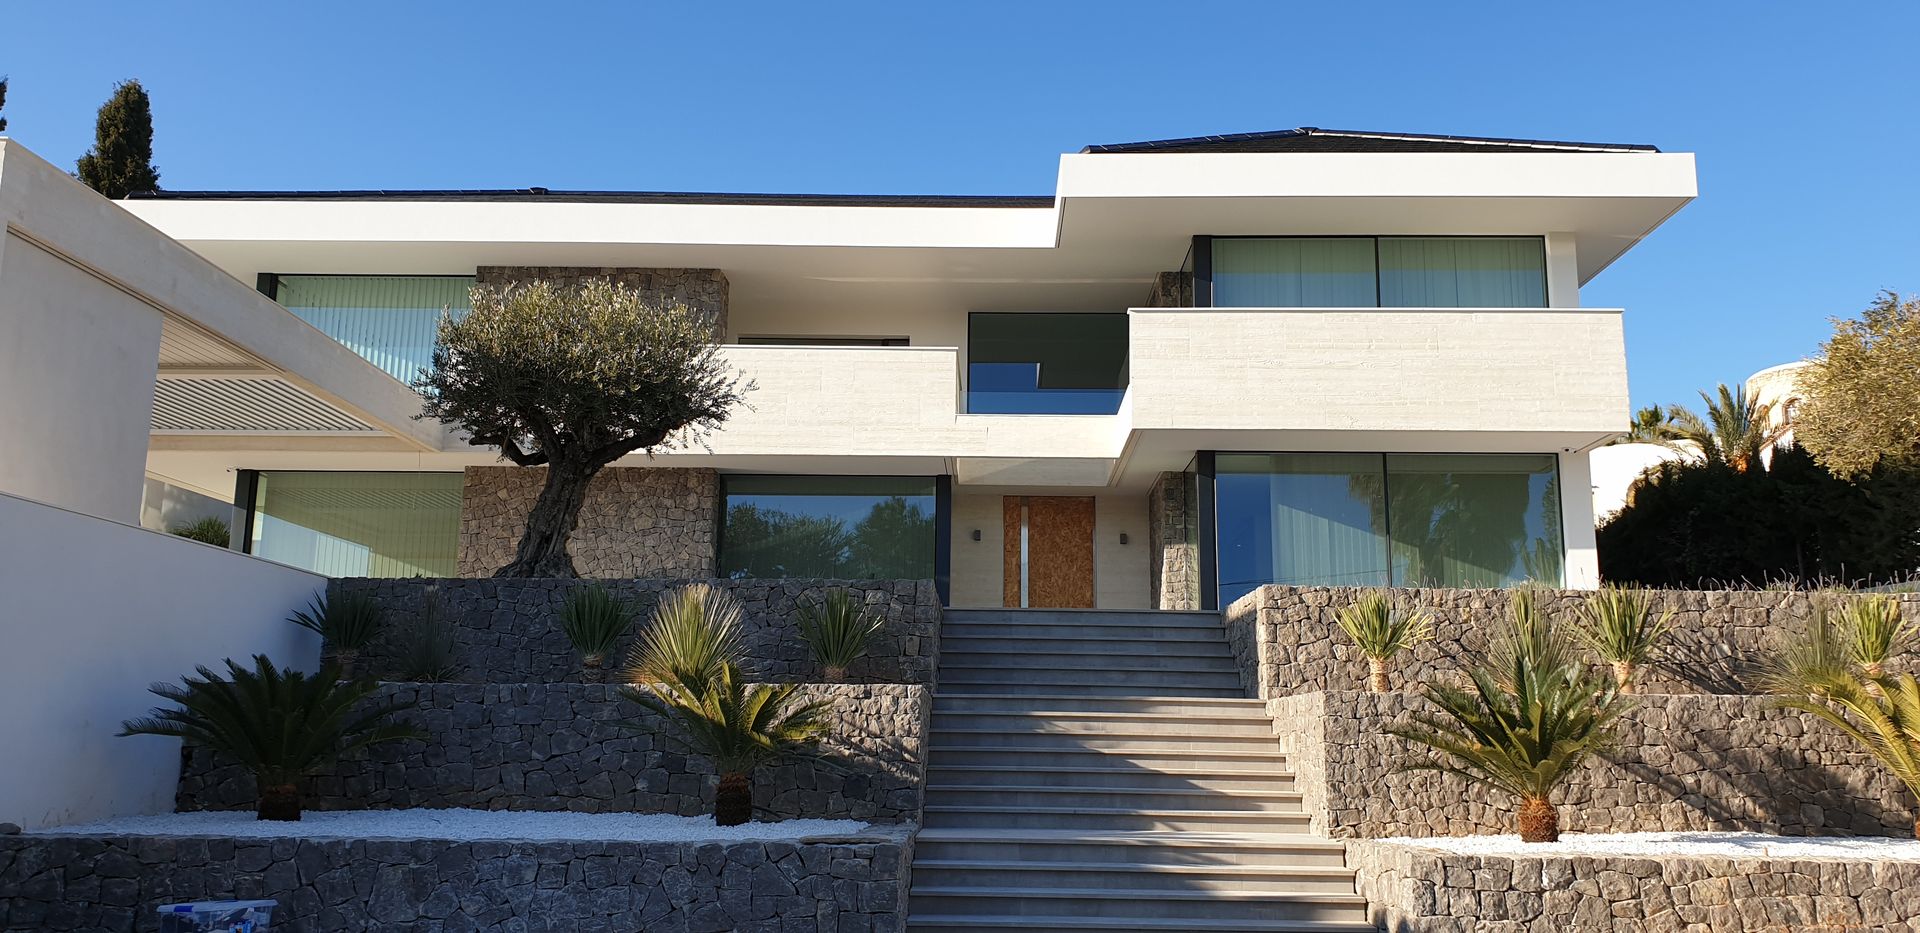 Vivienda aislada frente al mar, Antonio Cilea arquitecto Antonio Cilea arquitecto Villa Beton